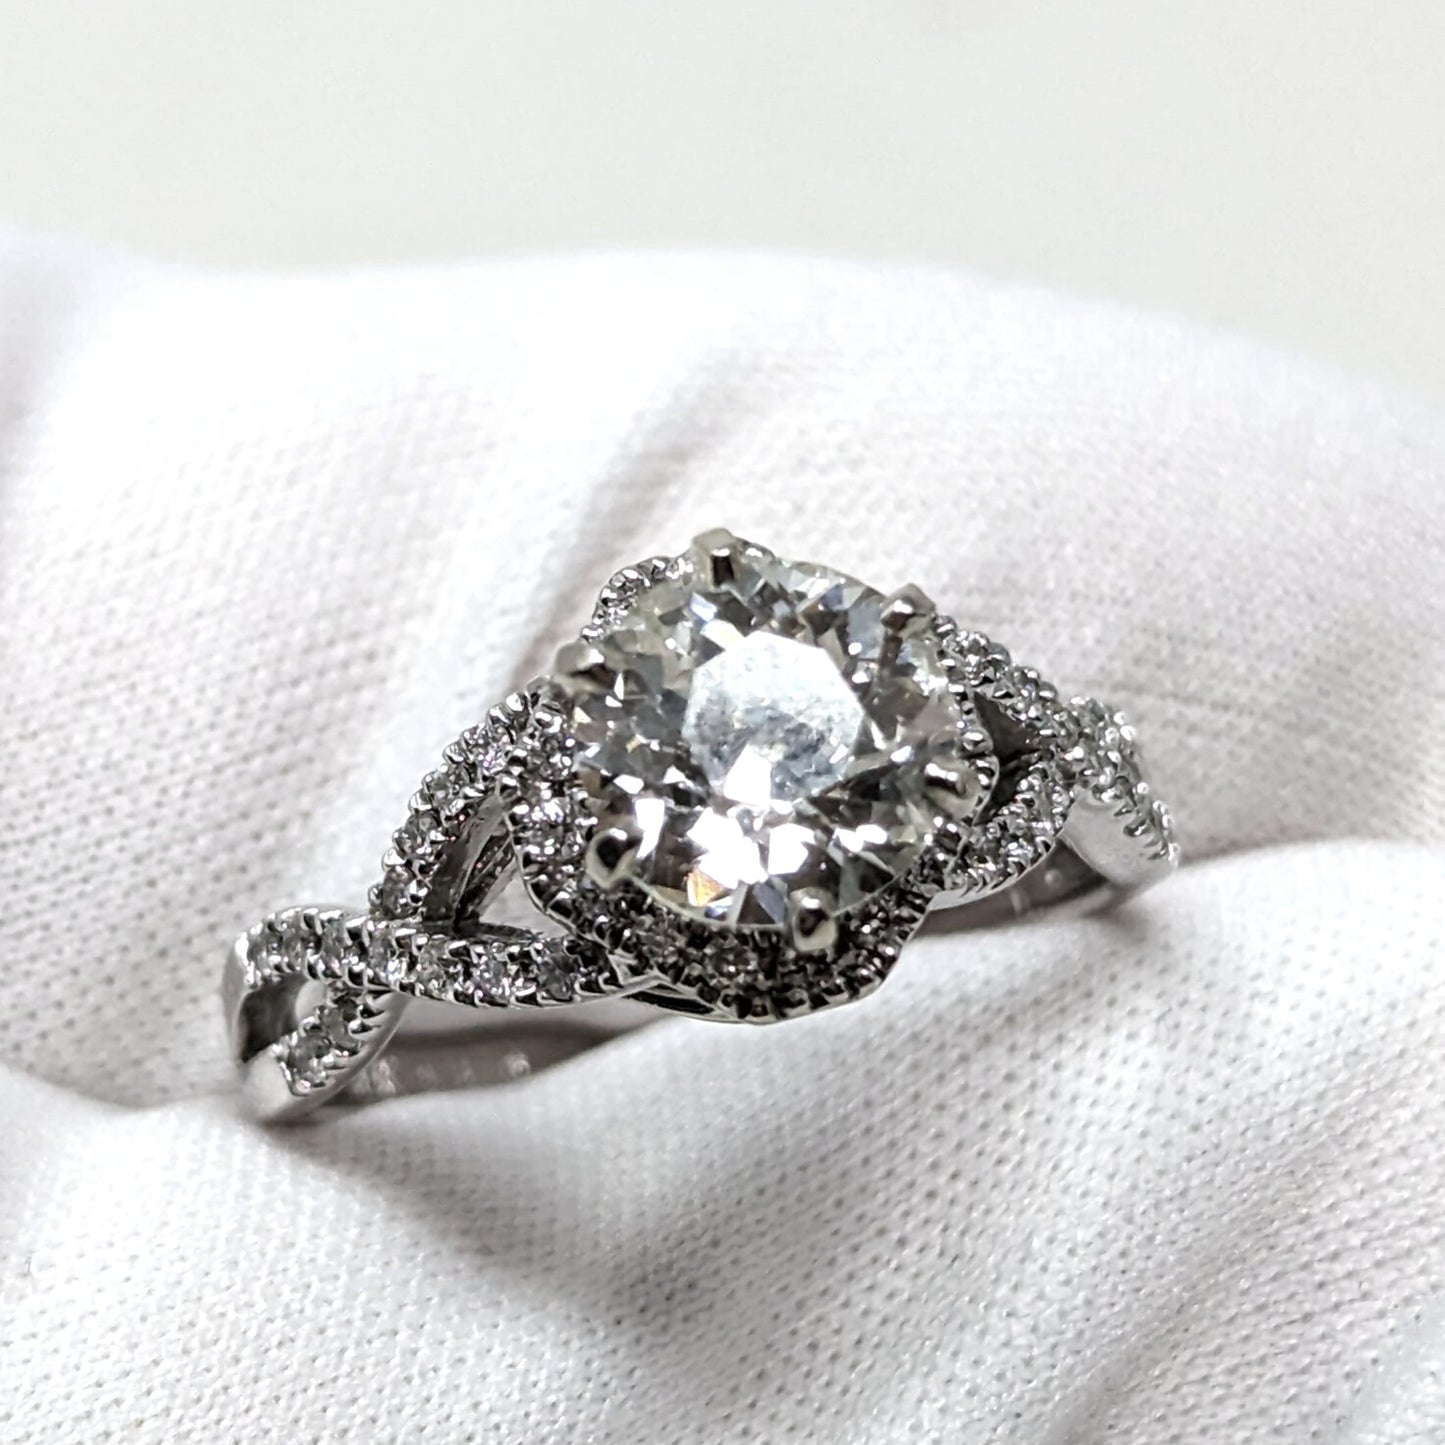 14K White Gold Antique 1.91tcw Diamond Wedding Ring Set